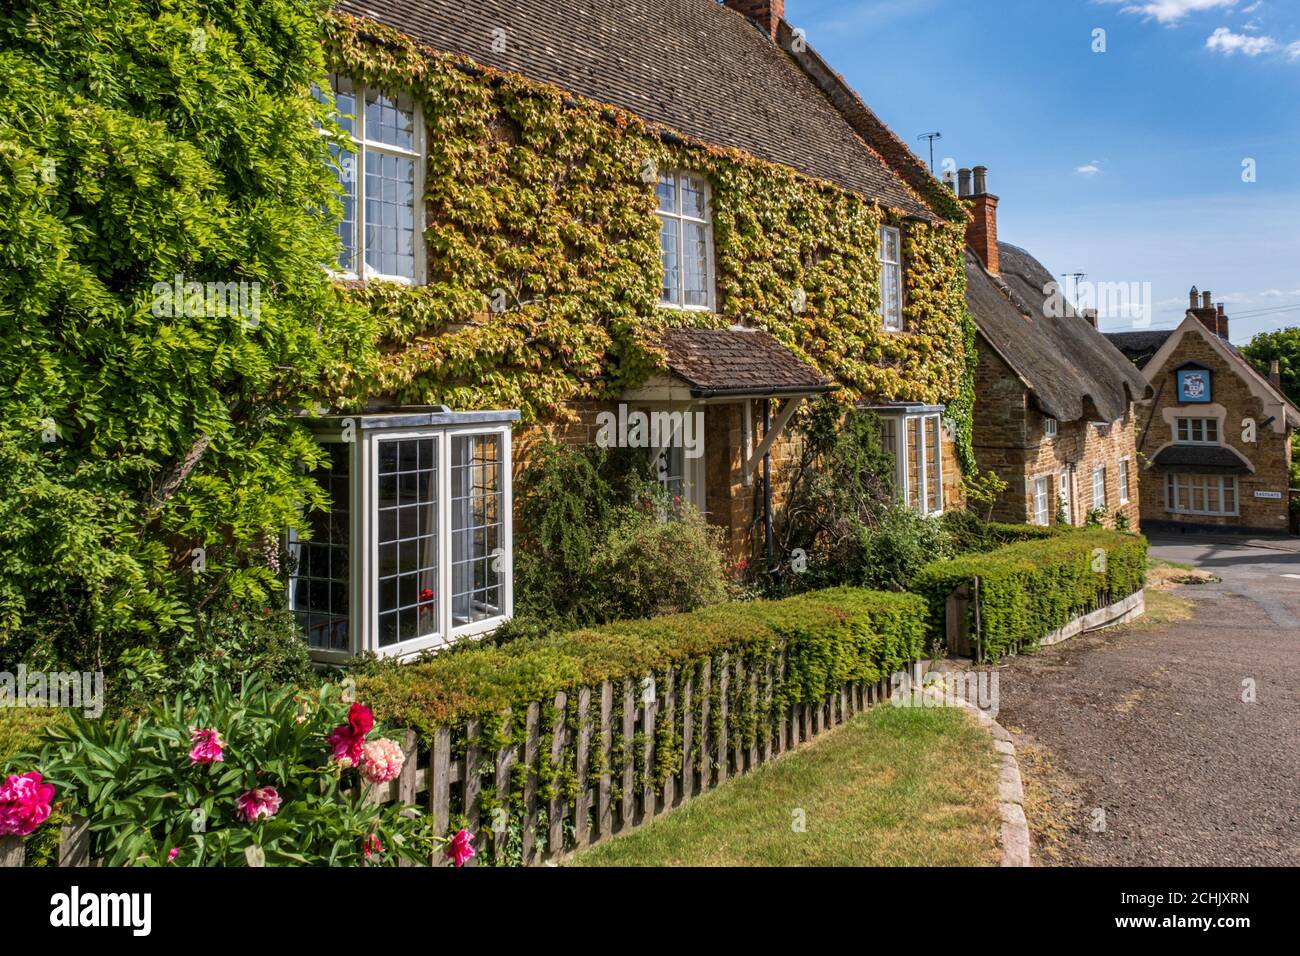 Maisons pittoresques sur le village vert, Hallaton, Leicestershire, Angleterre, Royaume-Uni Banque D'Images